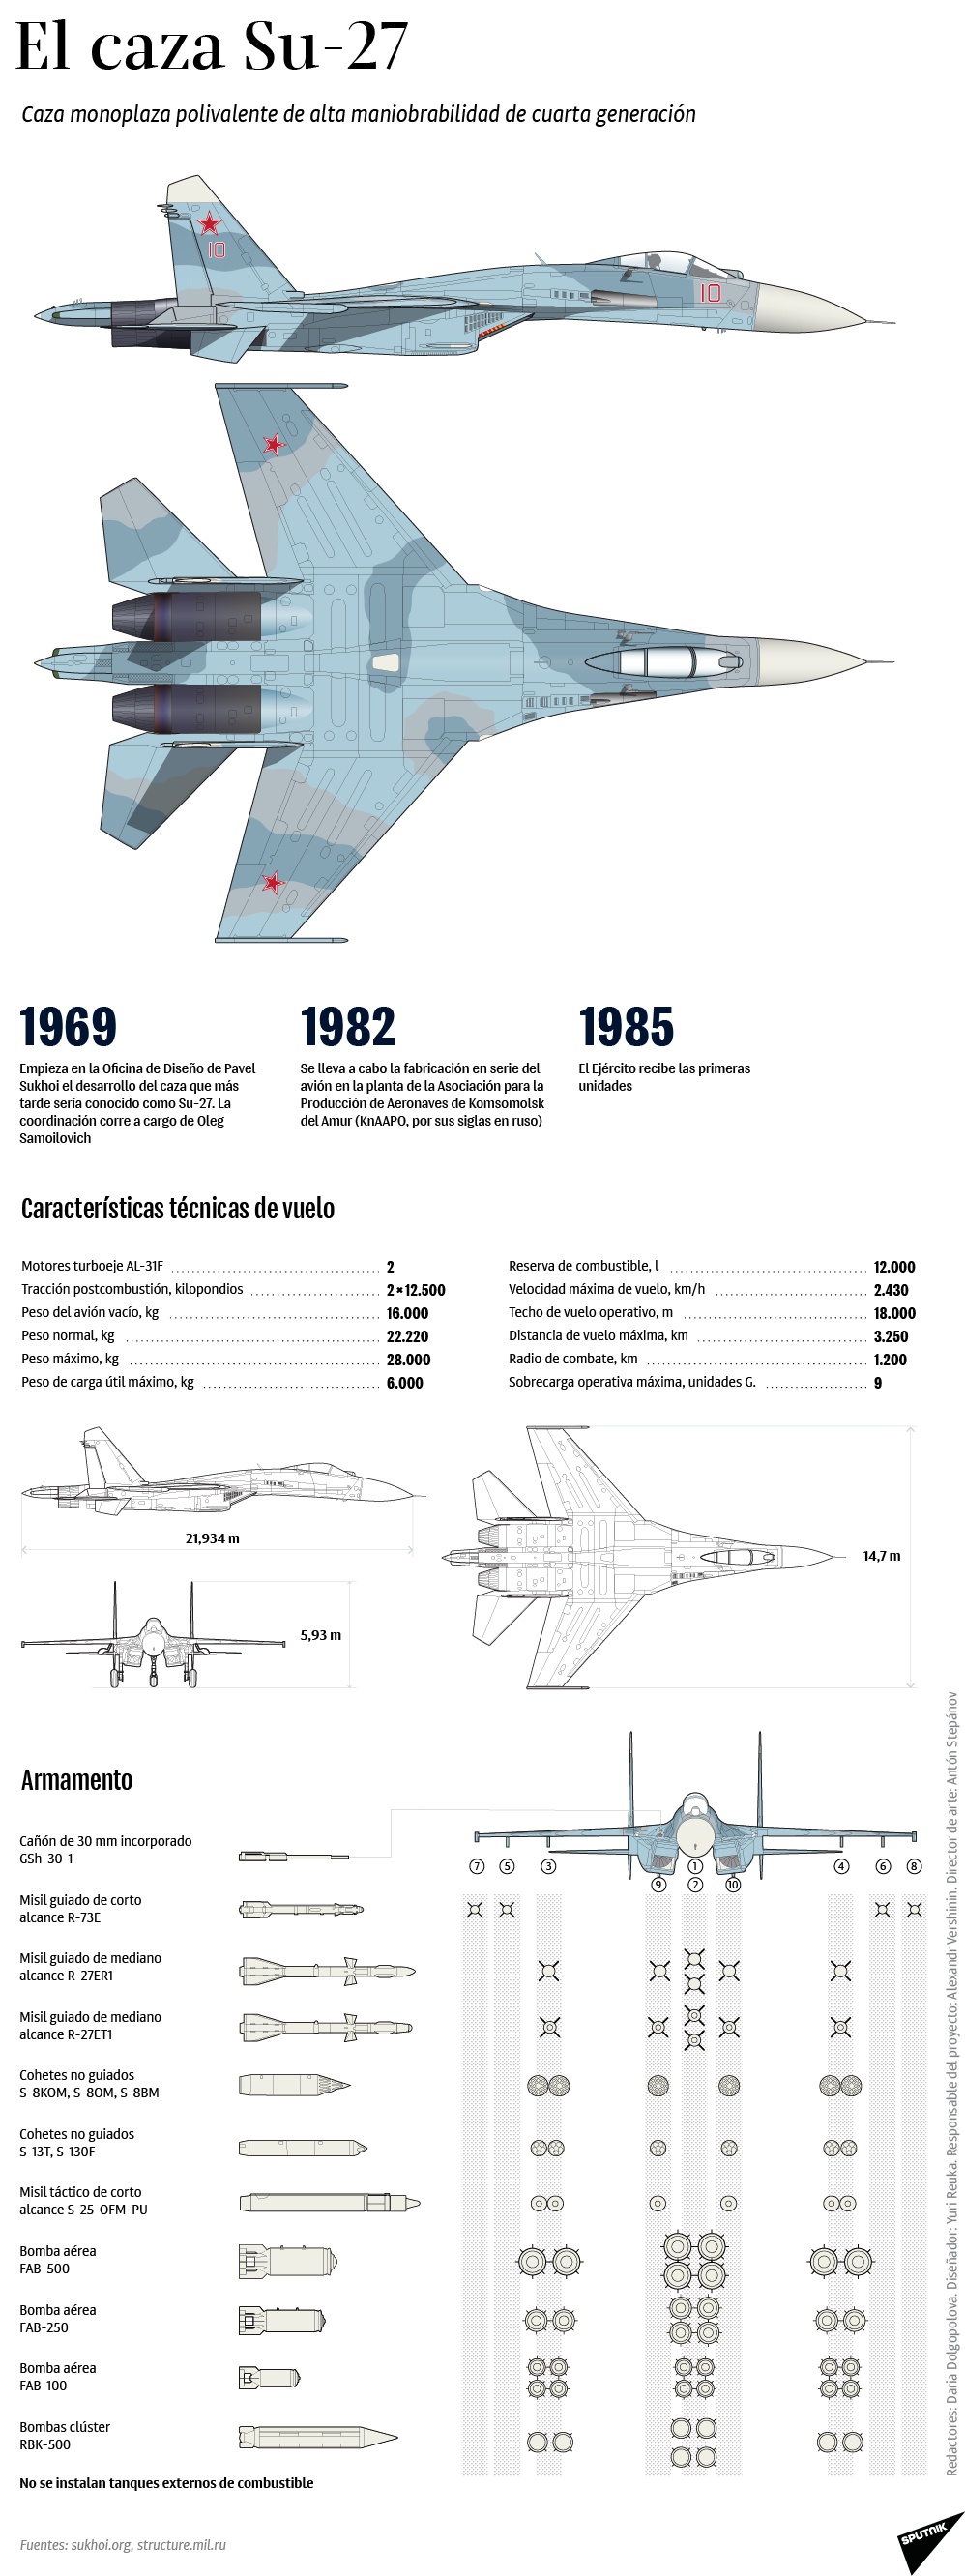 El caza monoplaza polivalente de alta maniobrabilidad de cuarta generación Su-27 - Sputnik Mundo